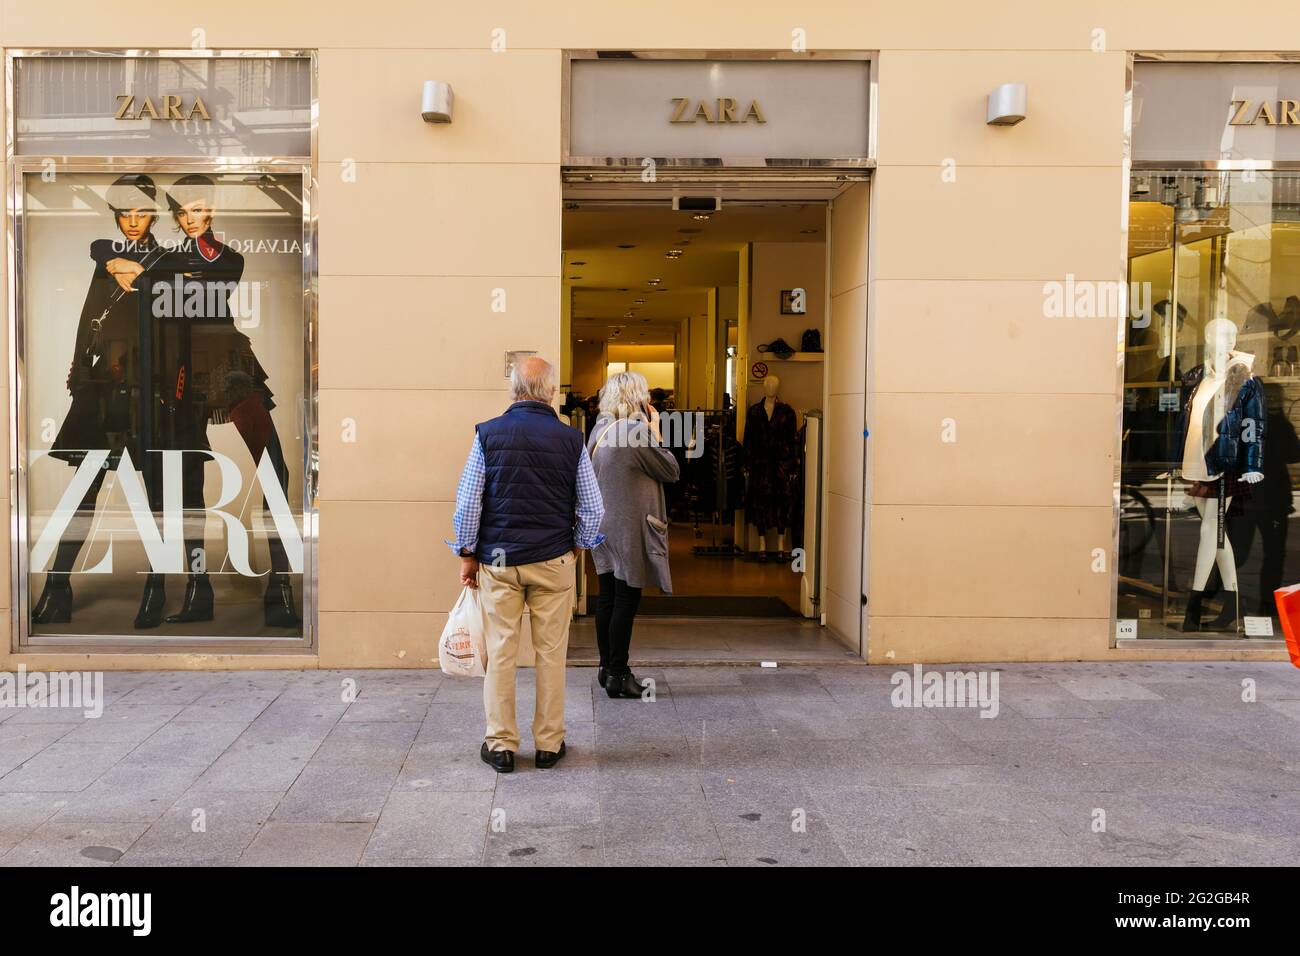 Zara storefront immagini e fotografie stock ad alta risoluzione - Alamy